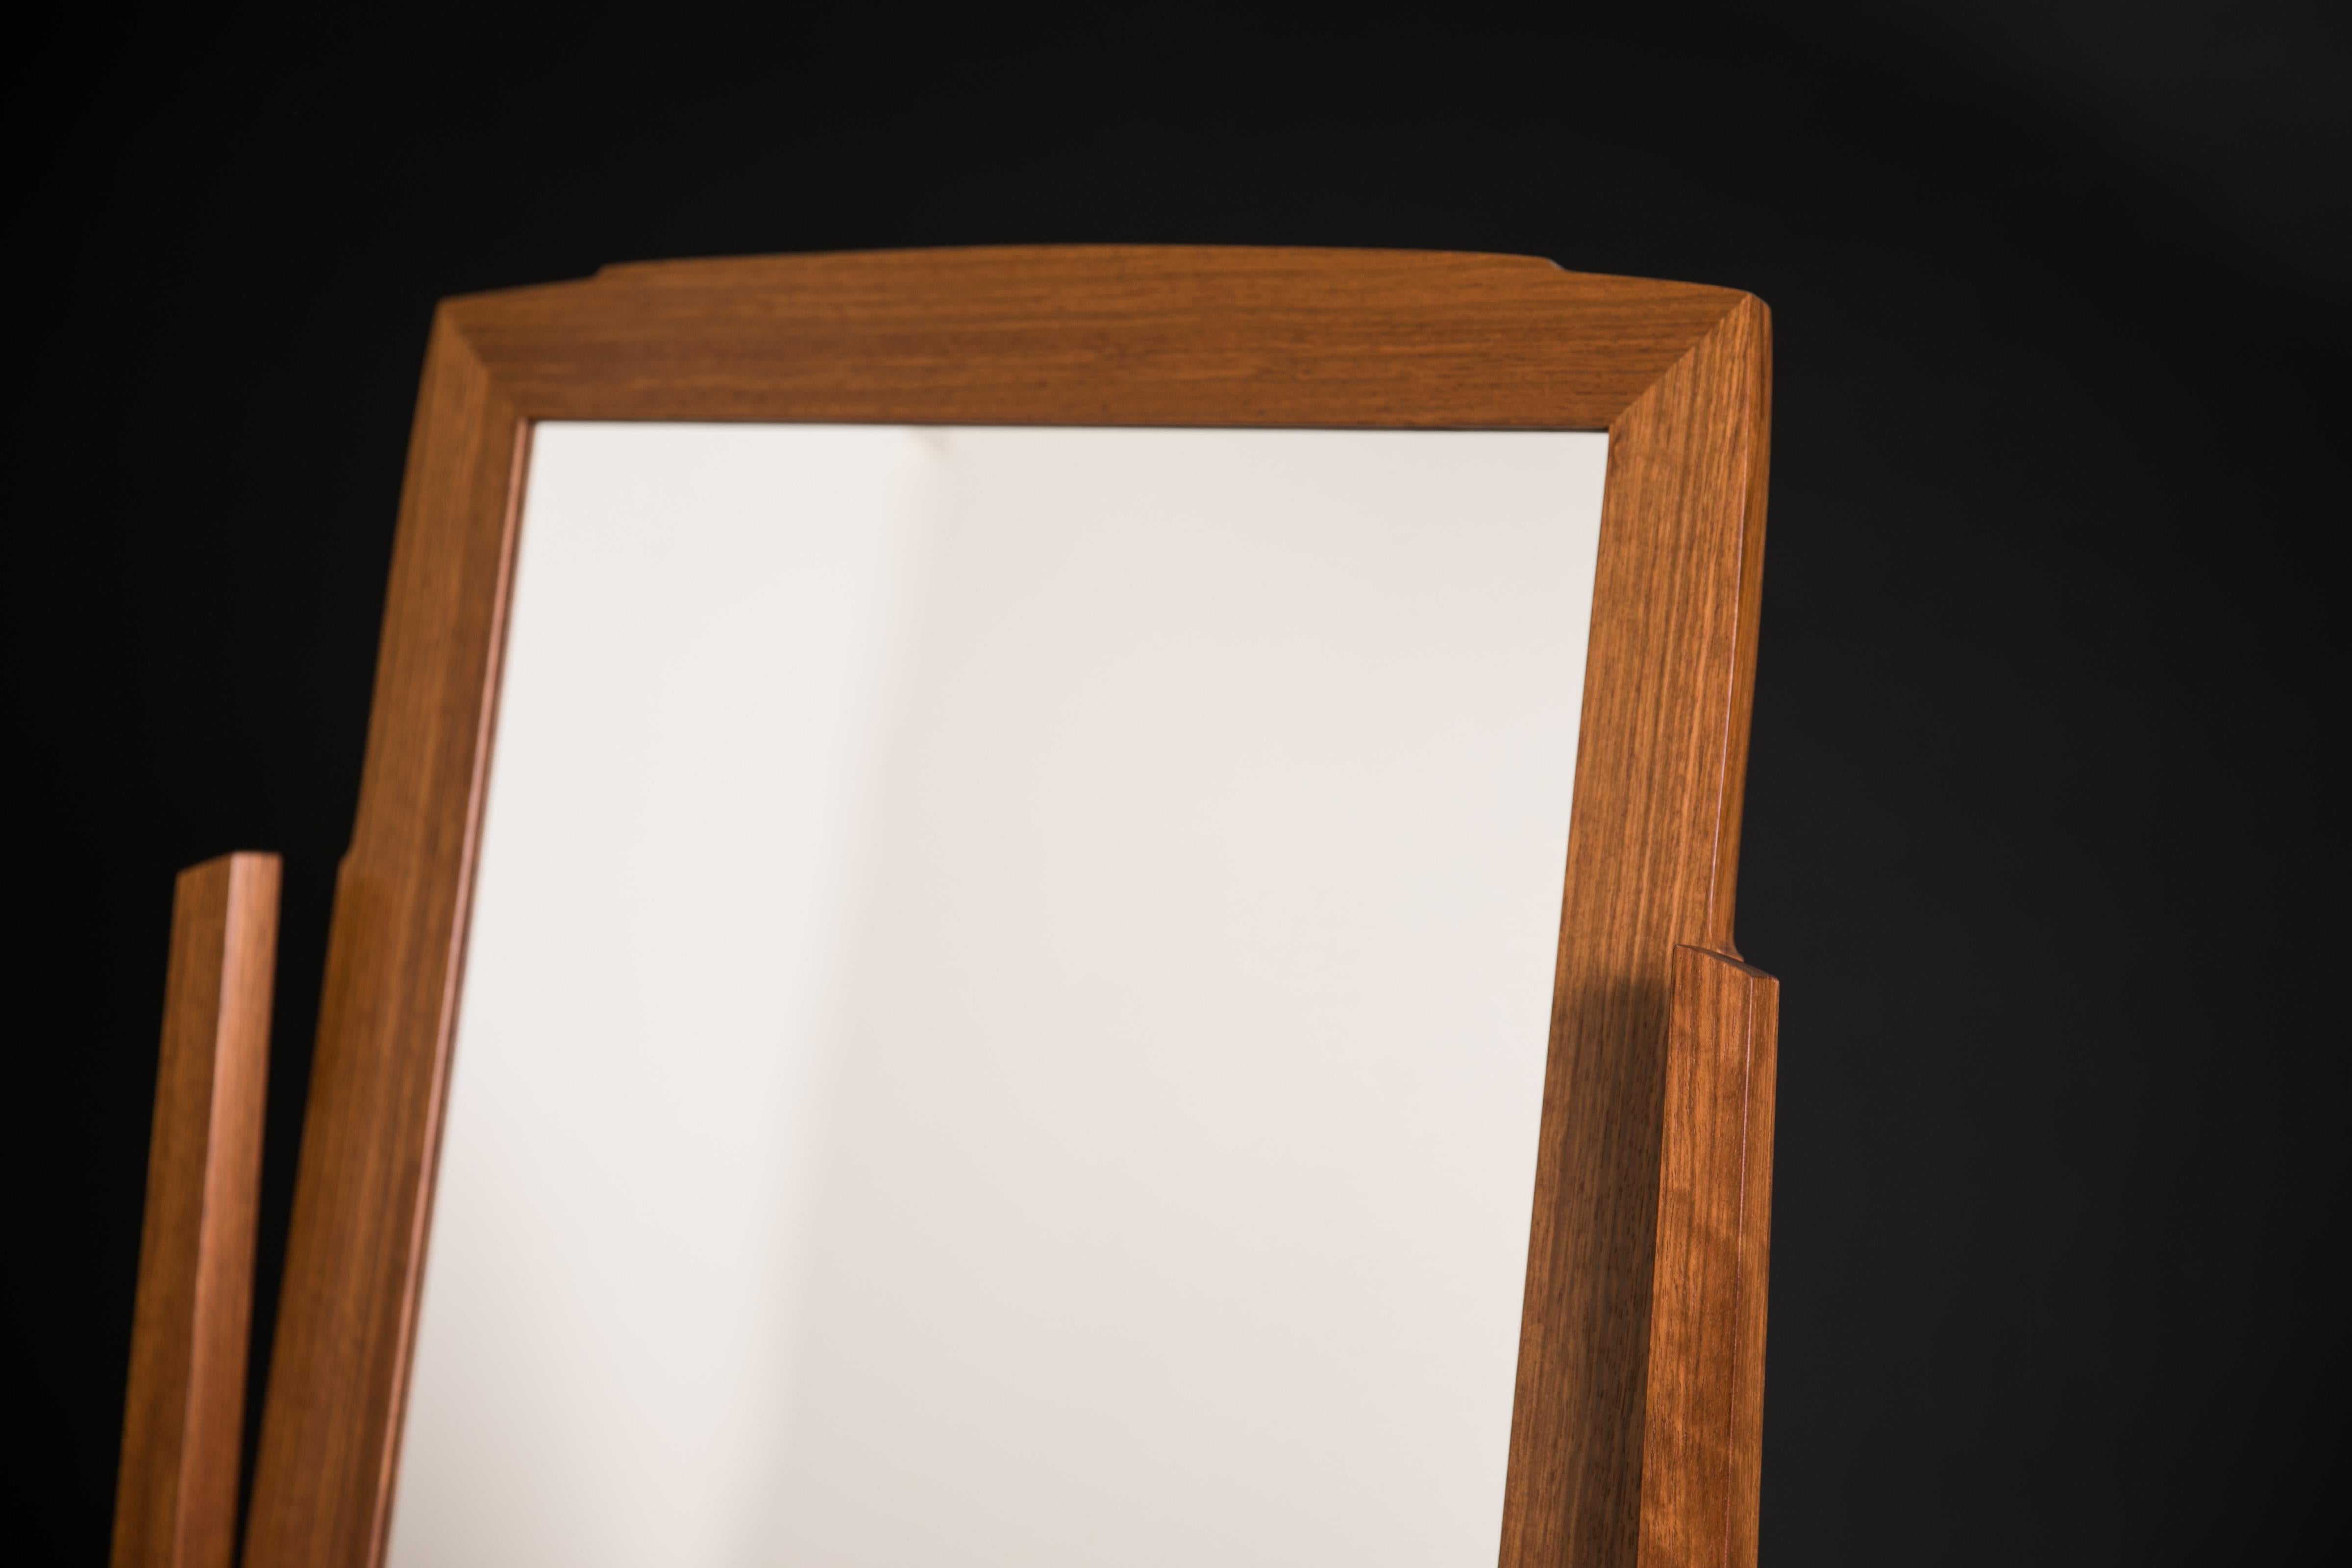 Während die traditionelle Form des Chevalspiegels oder Kippspiegels geehrt wird, spielt dieses Stück mit der Beziehung zwischen dem Rahmen und dem Spiegel selbst, indem es Kurven verwendet, die sich gegenseitig nachahmen. Der Stoff auf der Rückseite